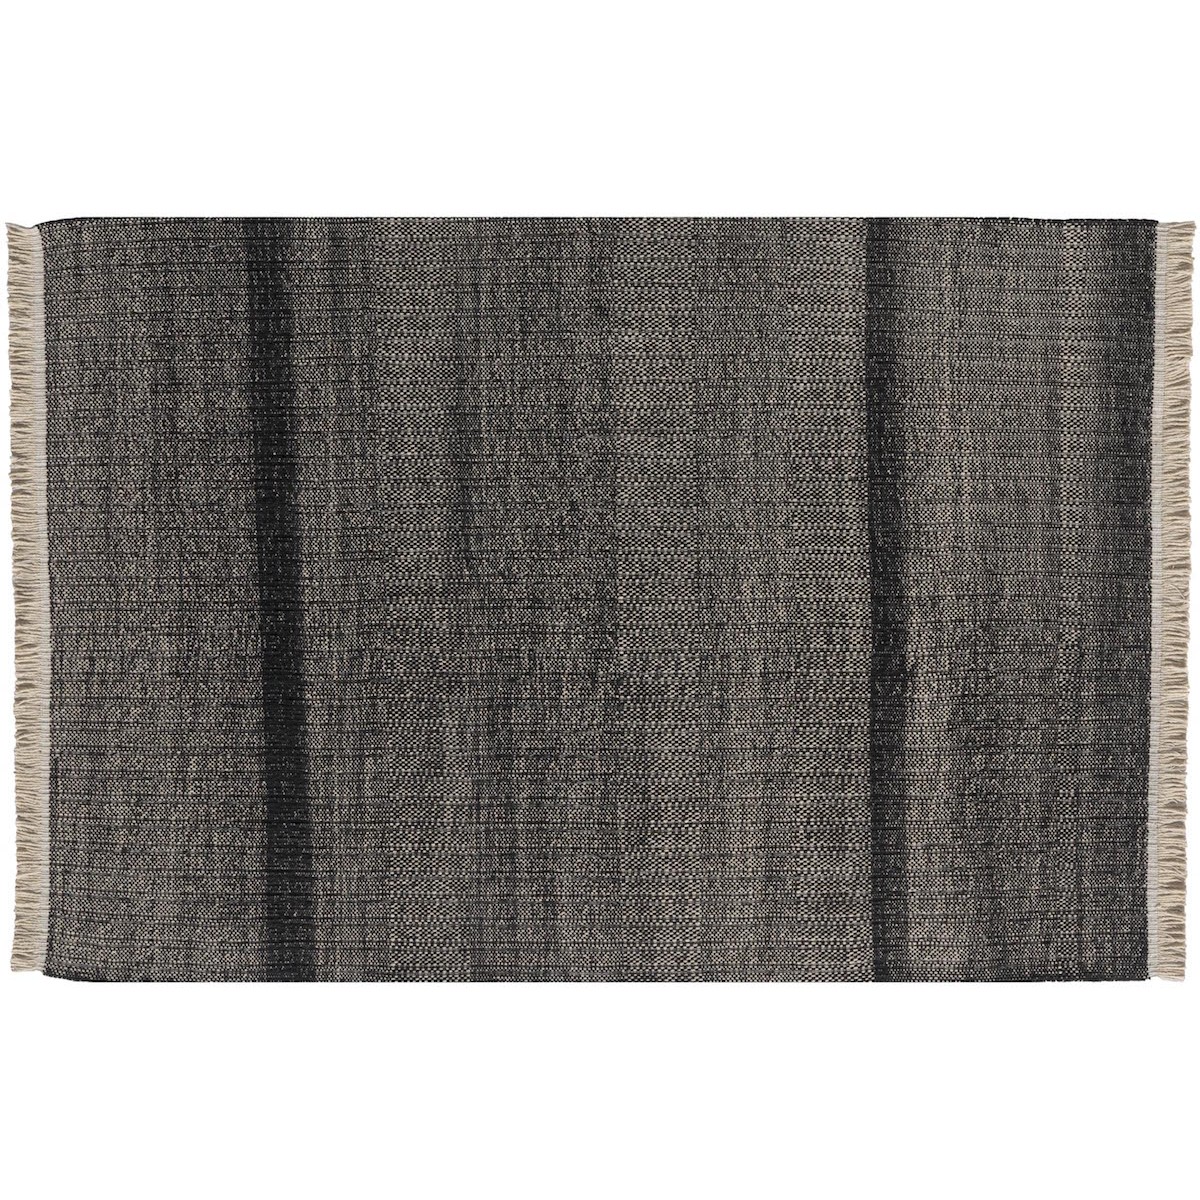 170x240cm - Tres Texture - tapis polyéthylène - noir